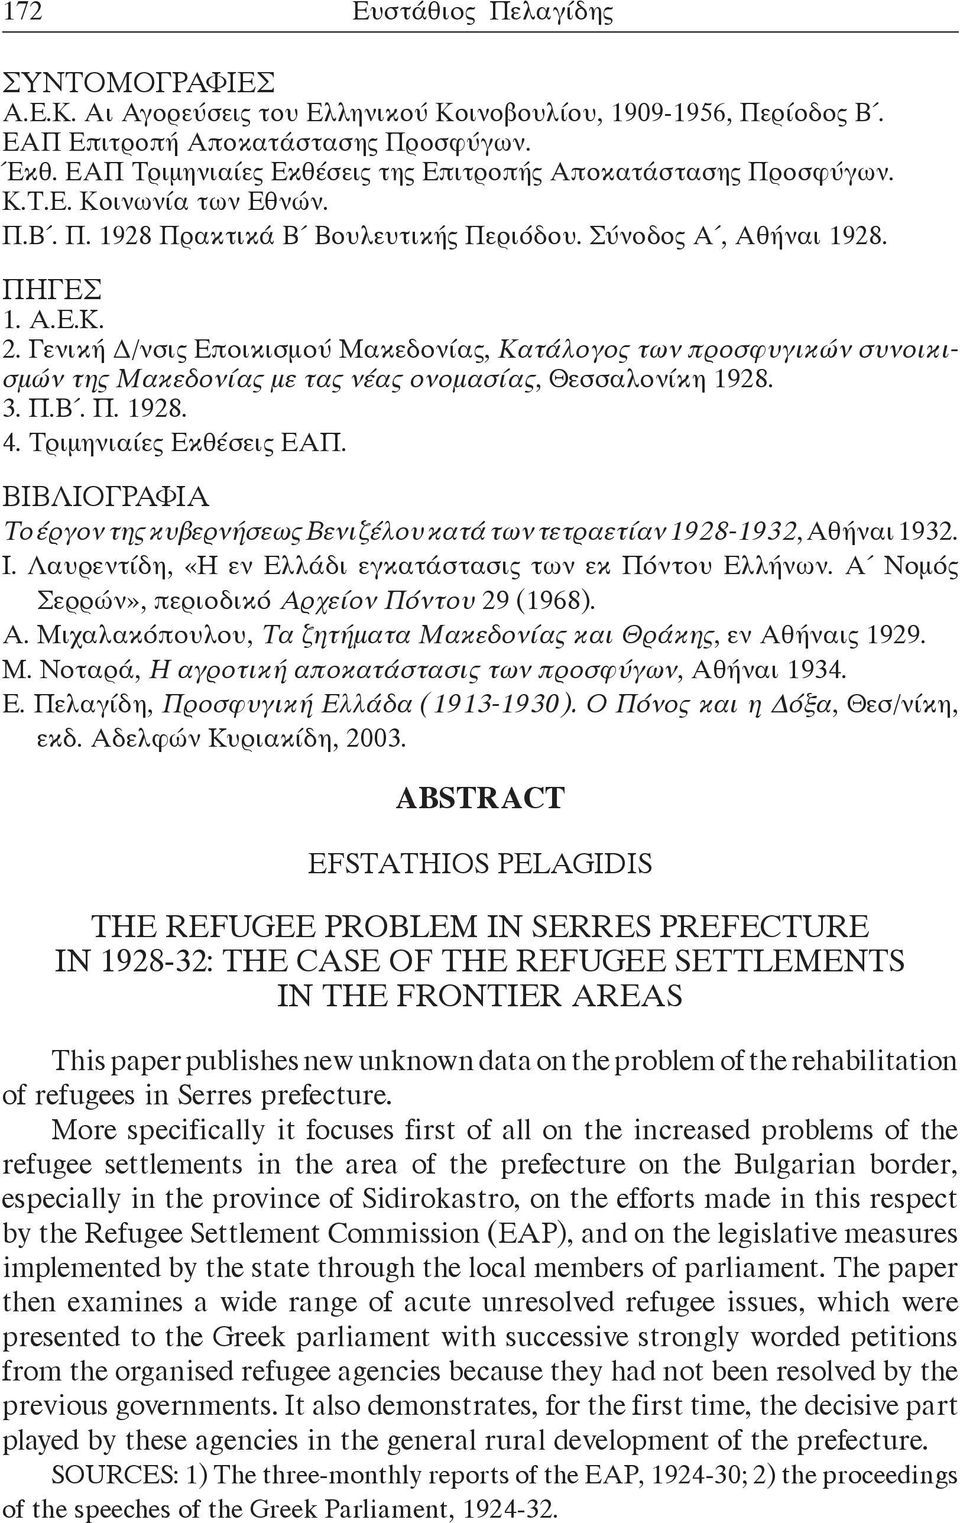 Γενική Δ/νσις Εποικισμού Μακεδονίας, Κατάλογος των προσφυγικών συνοικισμών της Μακεδονίας με τας νέας ονομασίας, Θεσσαλονίκη 1928. 3. Π.Β. Π. 1928. 4. Τριμηνιαίες Εκθέσεις ΕΑΠ.